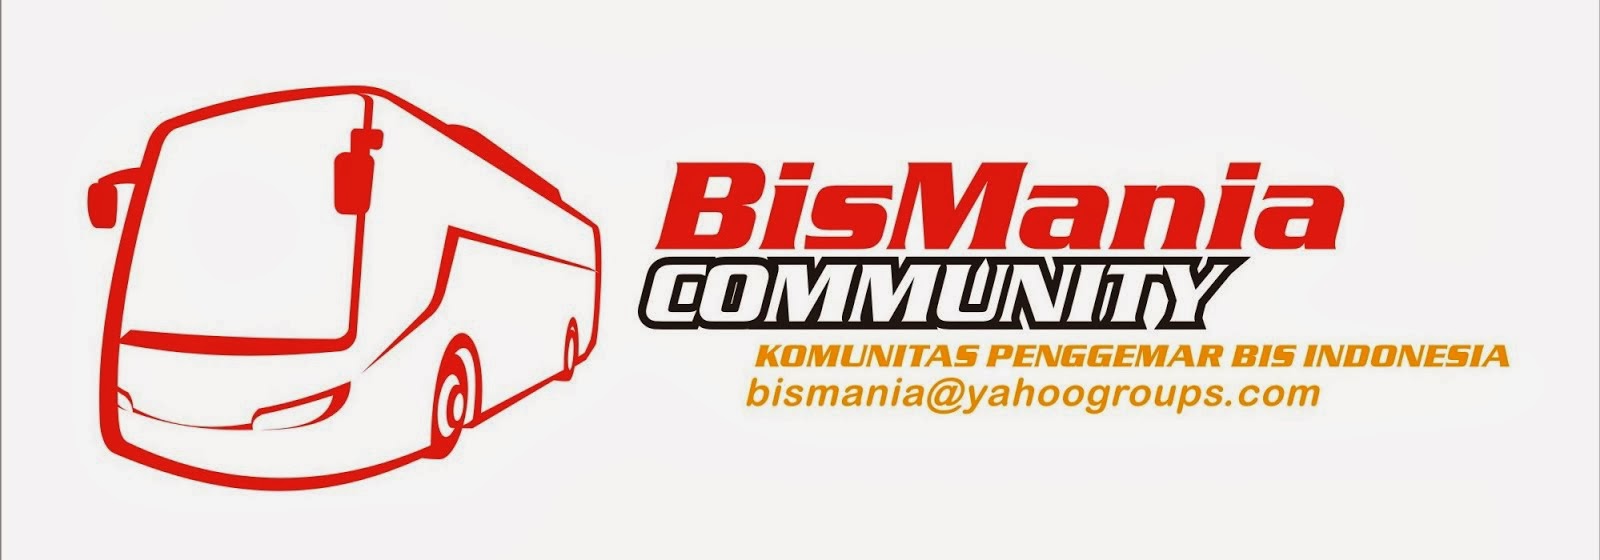 Bismania